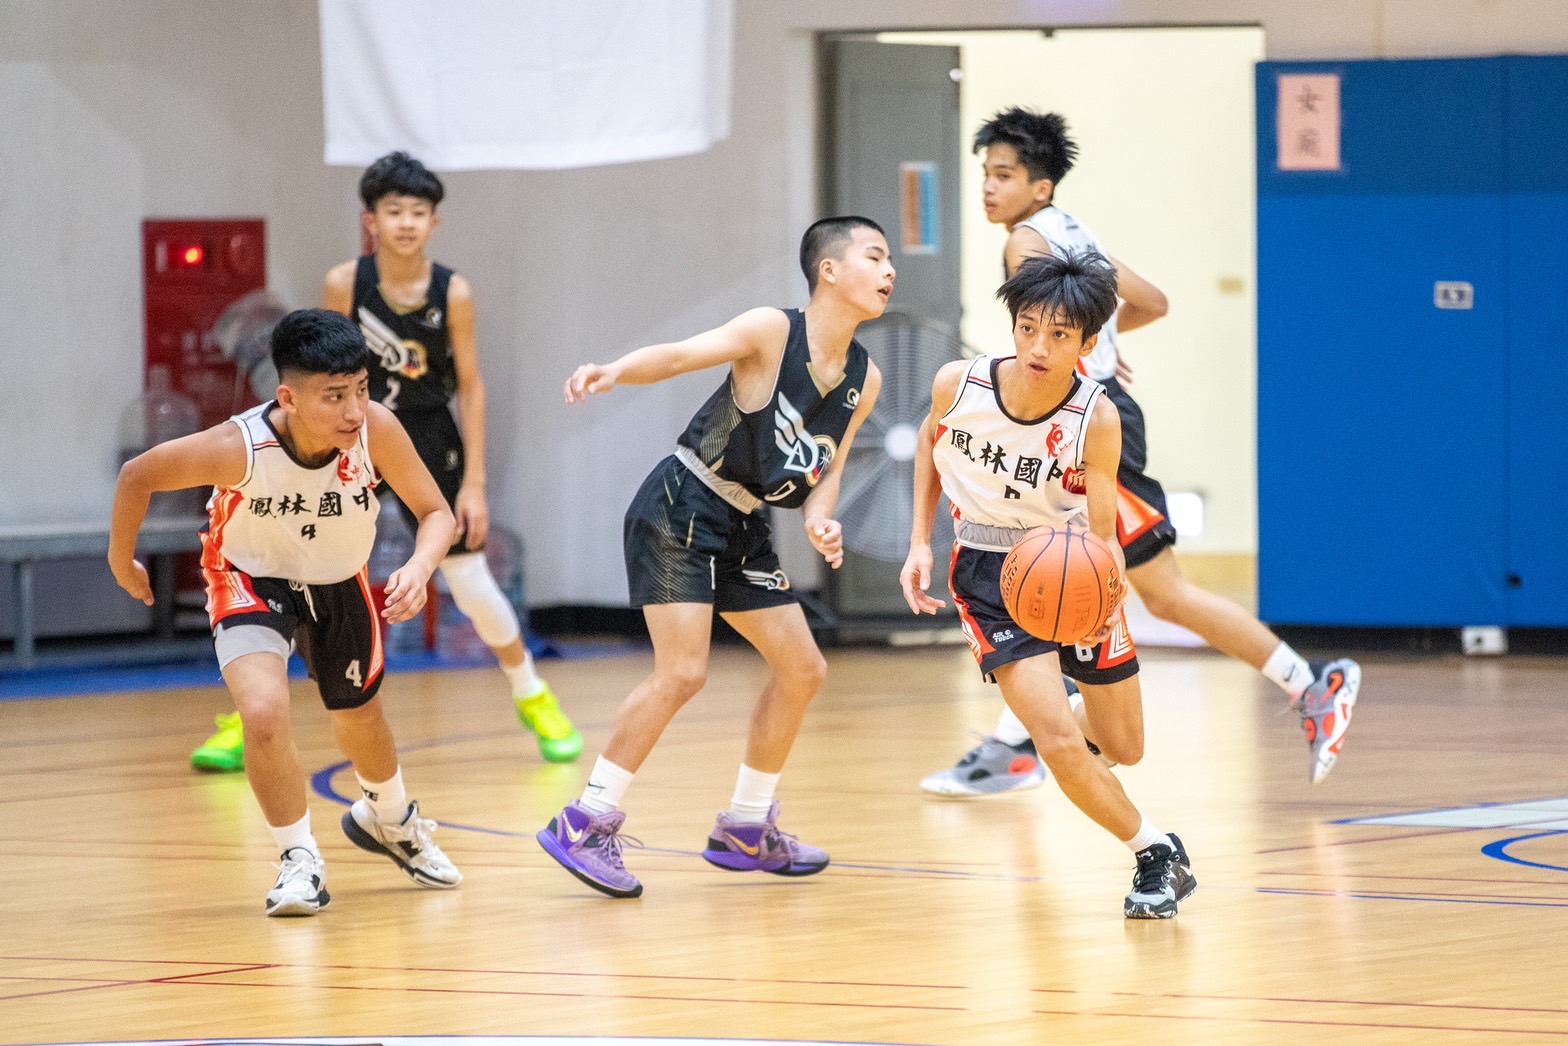 鳳林國中籃球隊雖然僅為學校社團性質，非體育班的球隊資源也比起都市學校少，但他們的表現絲毫不遜於正規籃球校隊，且在每場比賽中，都展現了不願放棄任何一顆球的機會。